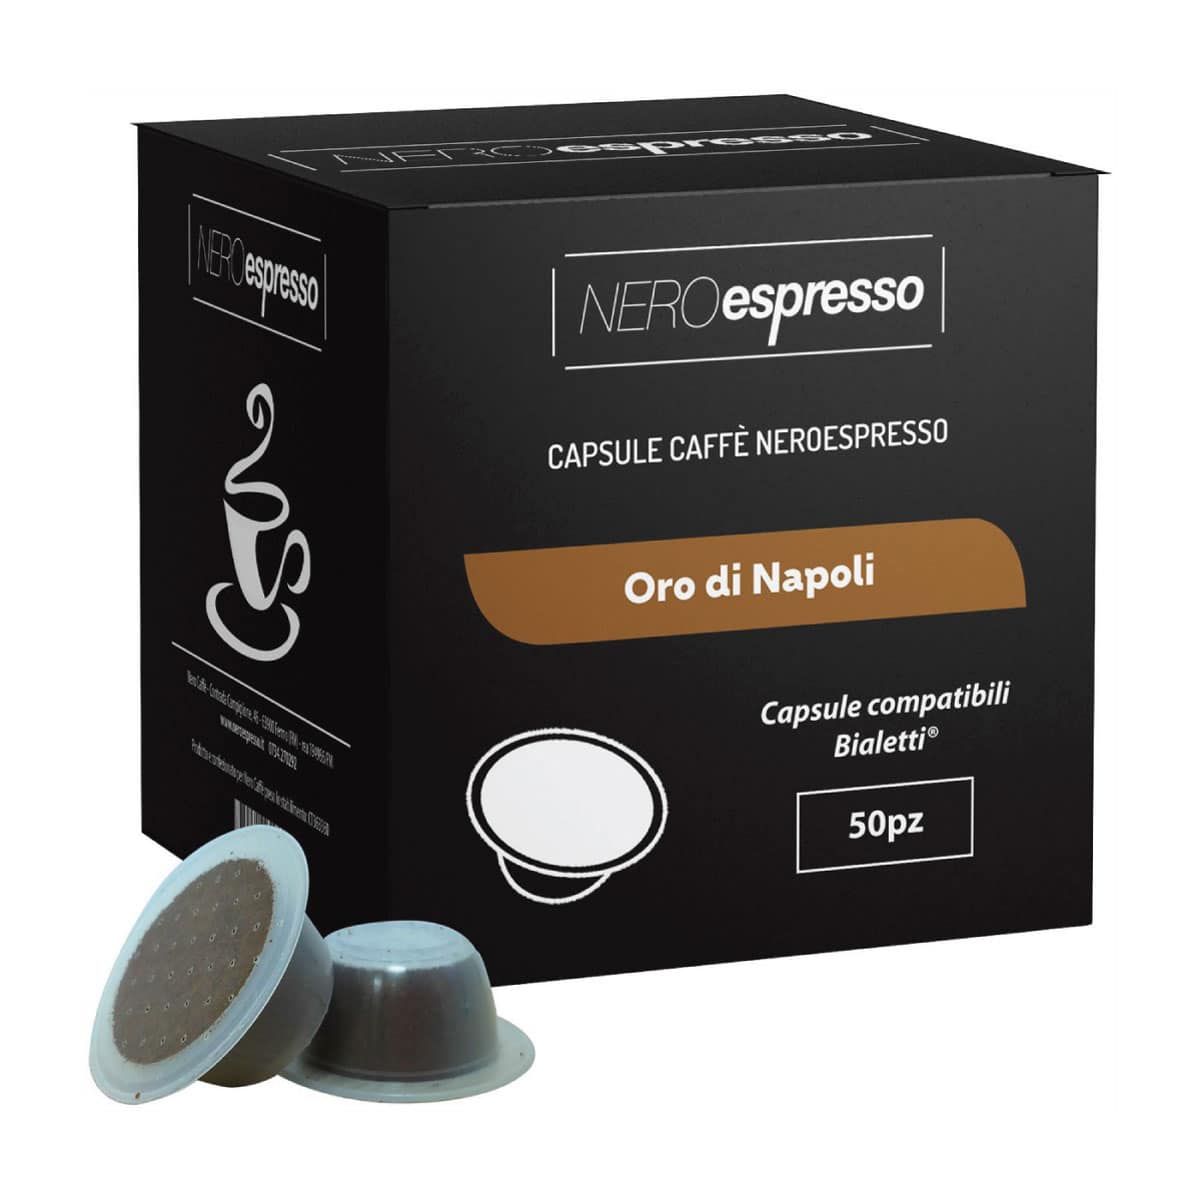 50 Capsule Caffè “Oro di Napoli” Compatibili Bialetti - Nero Espresso